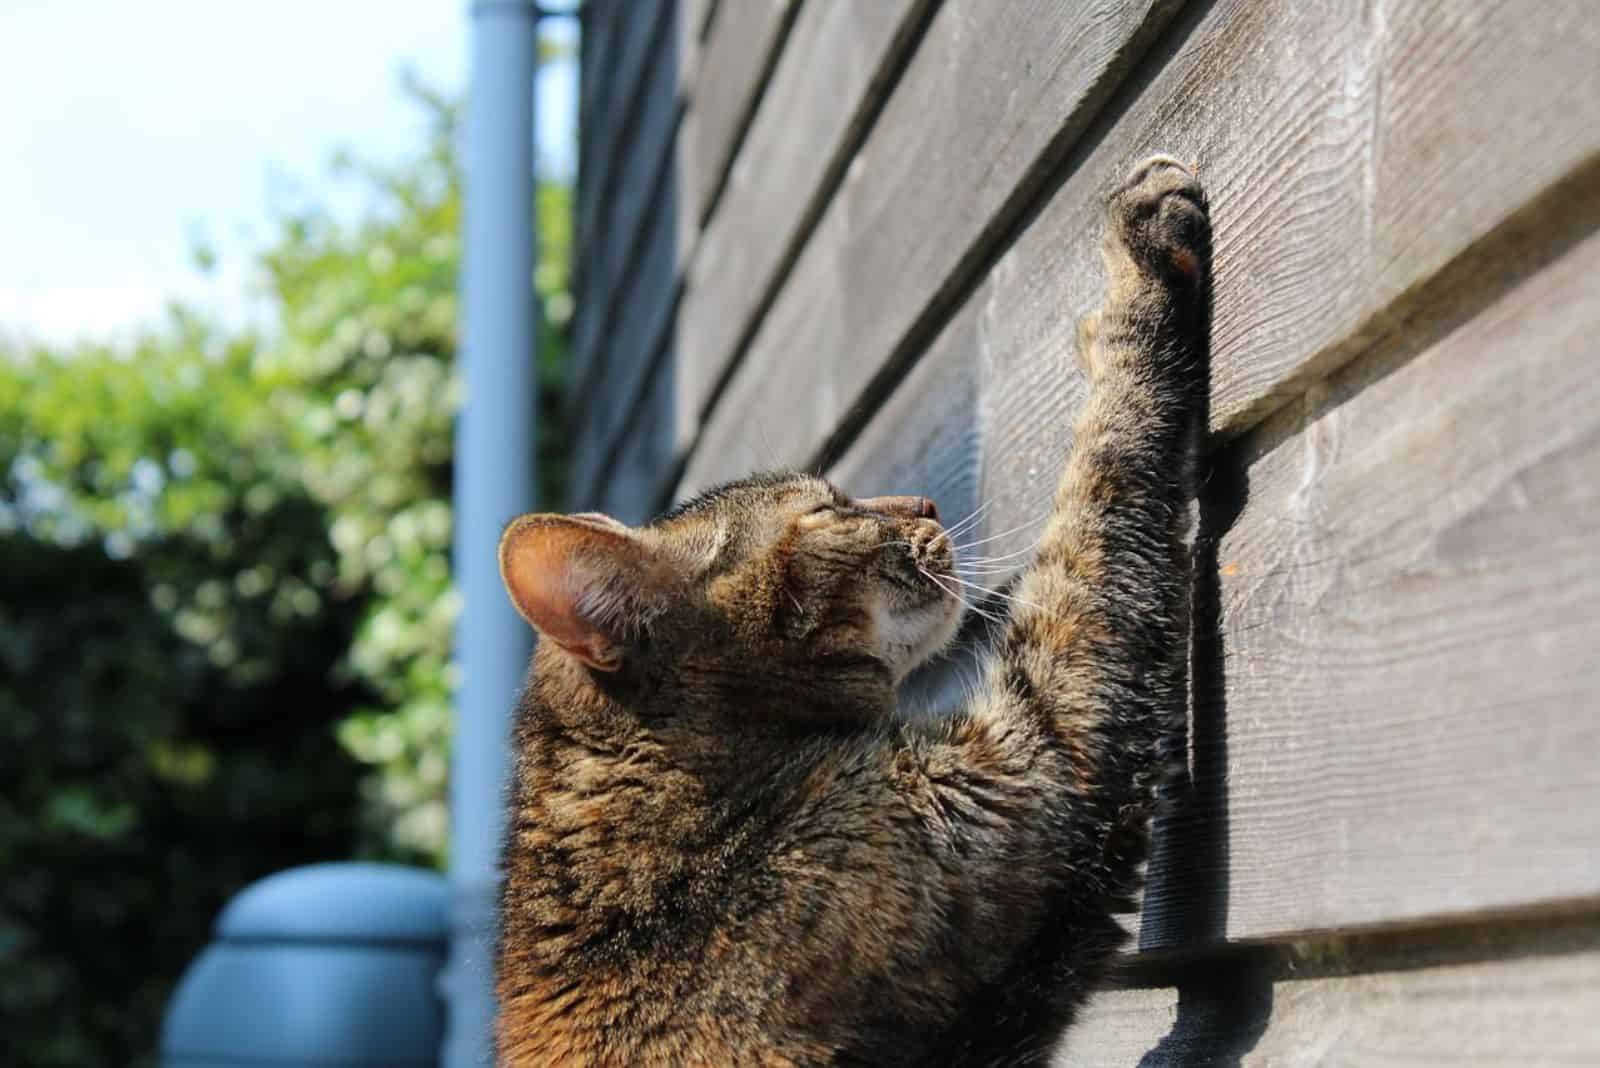 De kat krabt op de muur